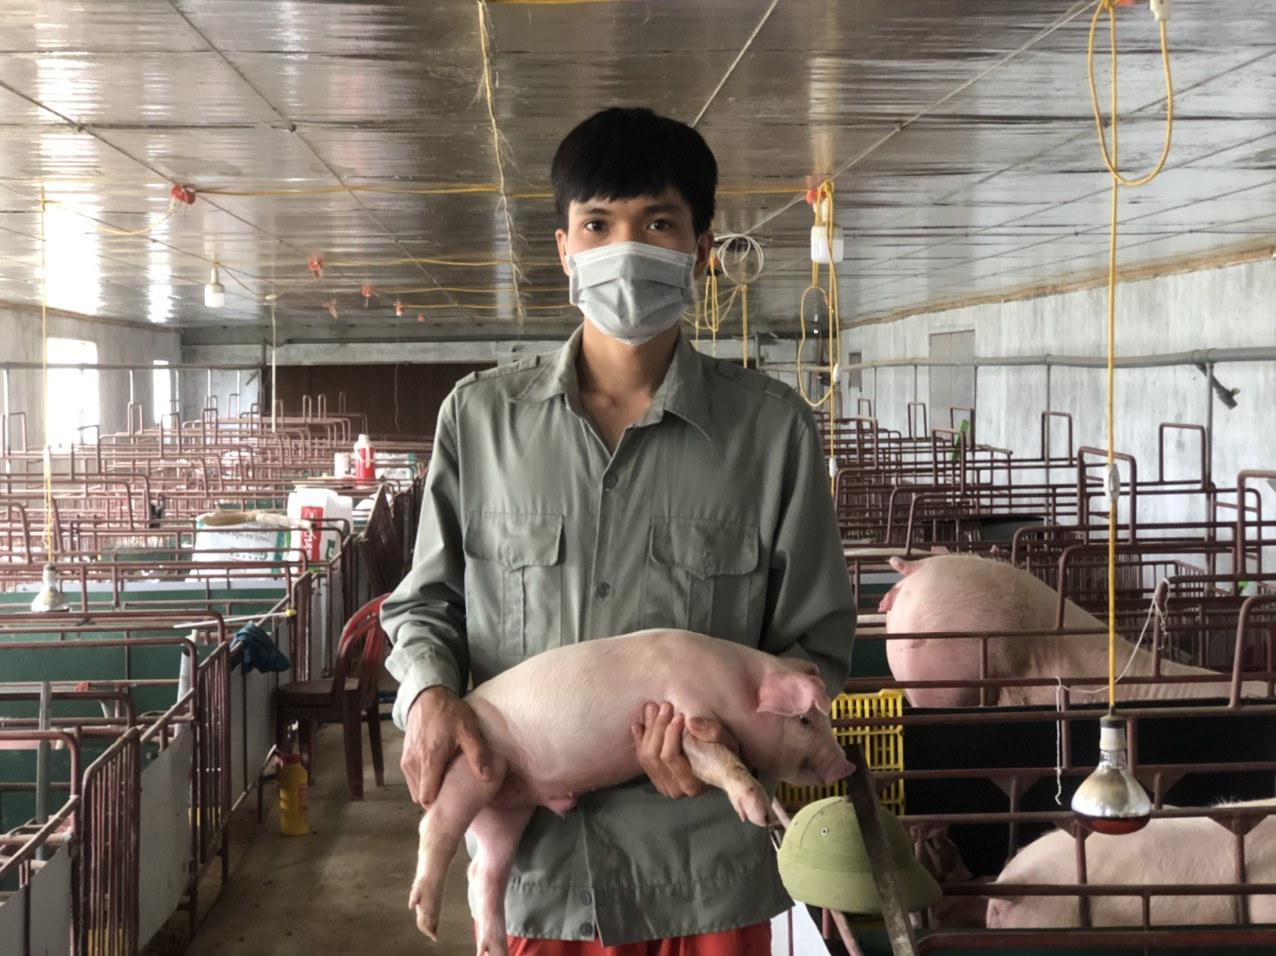 Anh Nguyễn Văn Nhật, Chủ trại chuyên lợn giống ở Nghĩa Khánh, Nghĩa Đàn cho biết, chi phí cho một con lợn giống từ khi phối giống đến khi xuất chuồng hết khoảng 1 triệu đồng, với giá bán 1,1 triệu đồng/con lợn siêu nạc (biểu 10kg) như hiện nay là chỉ hòa vốn, không có lãi. Ảnh: Thanh Phúc